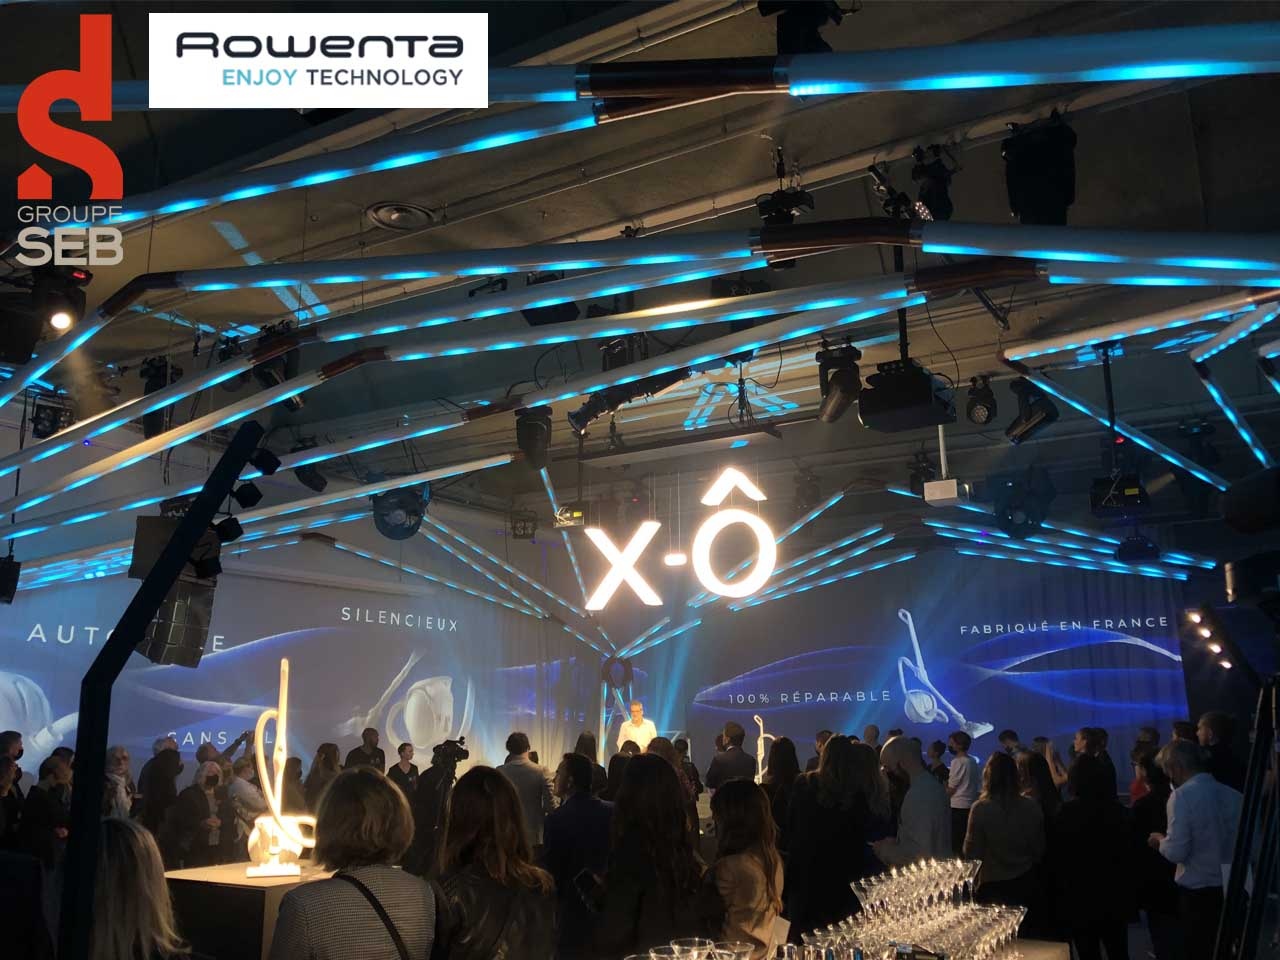 À travers sa marque Rowenta, le groupe SEB présente son nouvel aspirateur hybride X-Ô